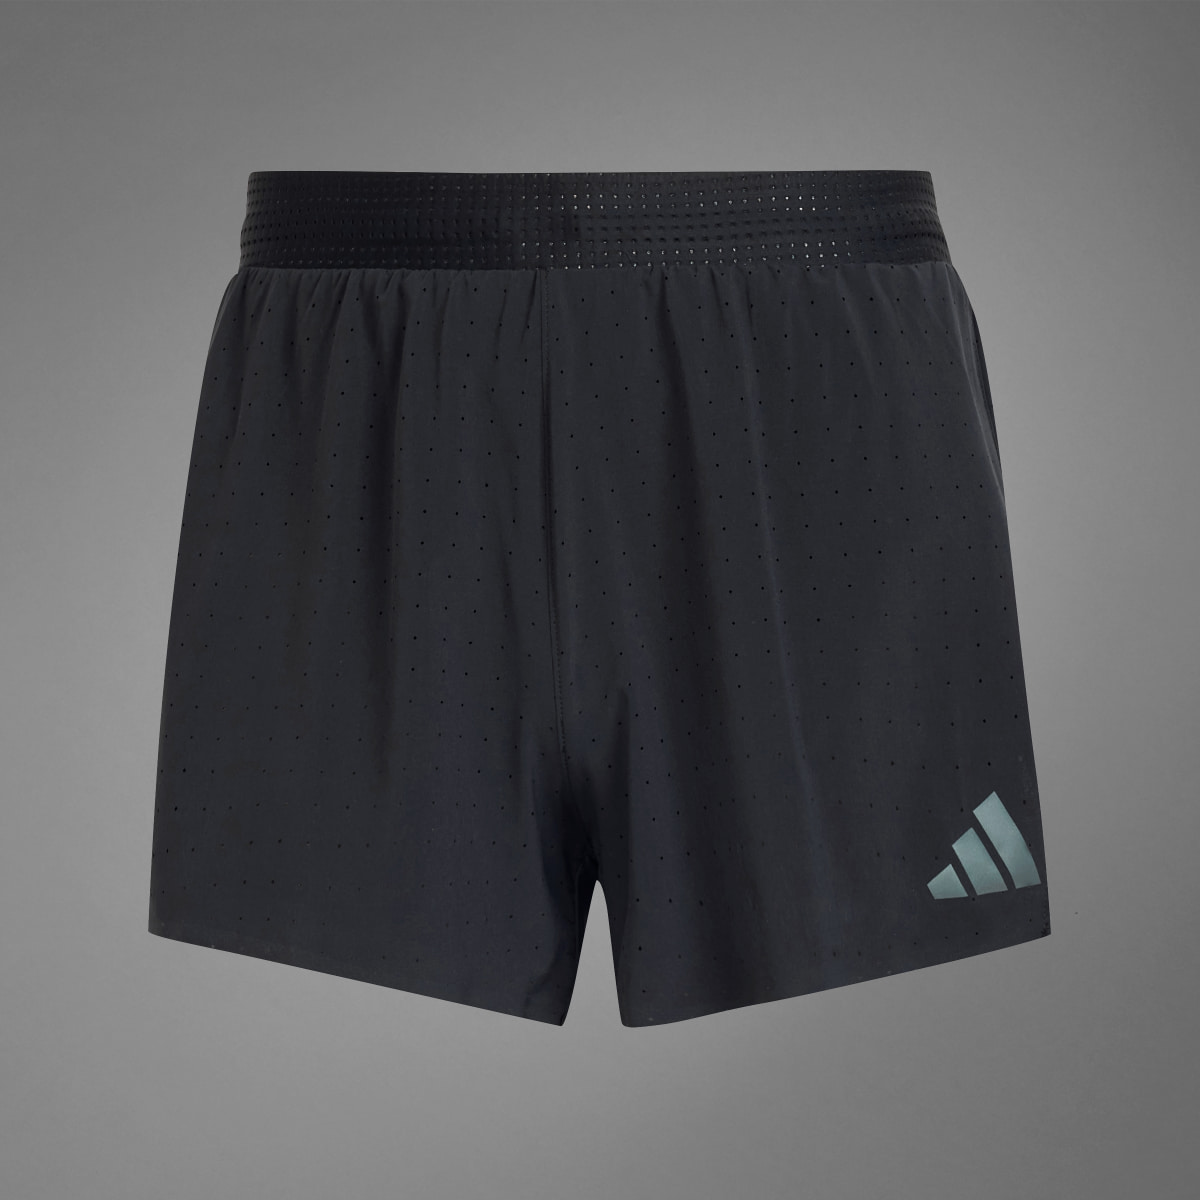 Adidas Adizero Running Split Shorts. 11